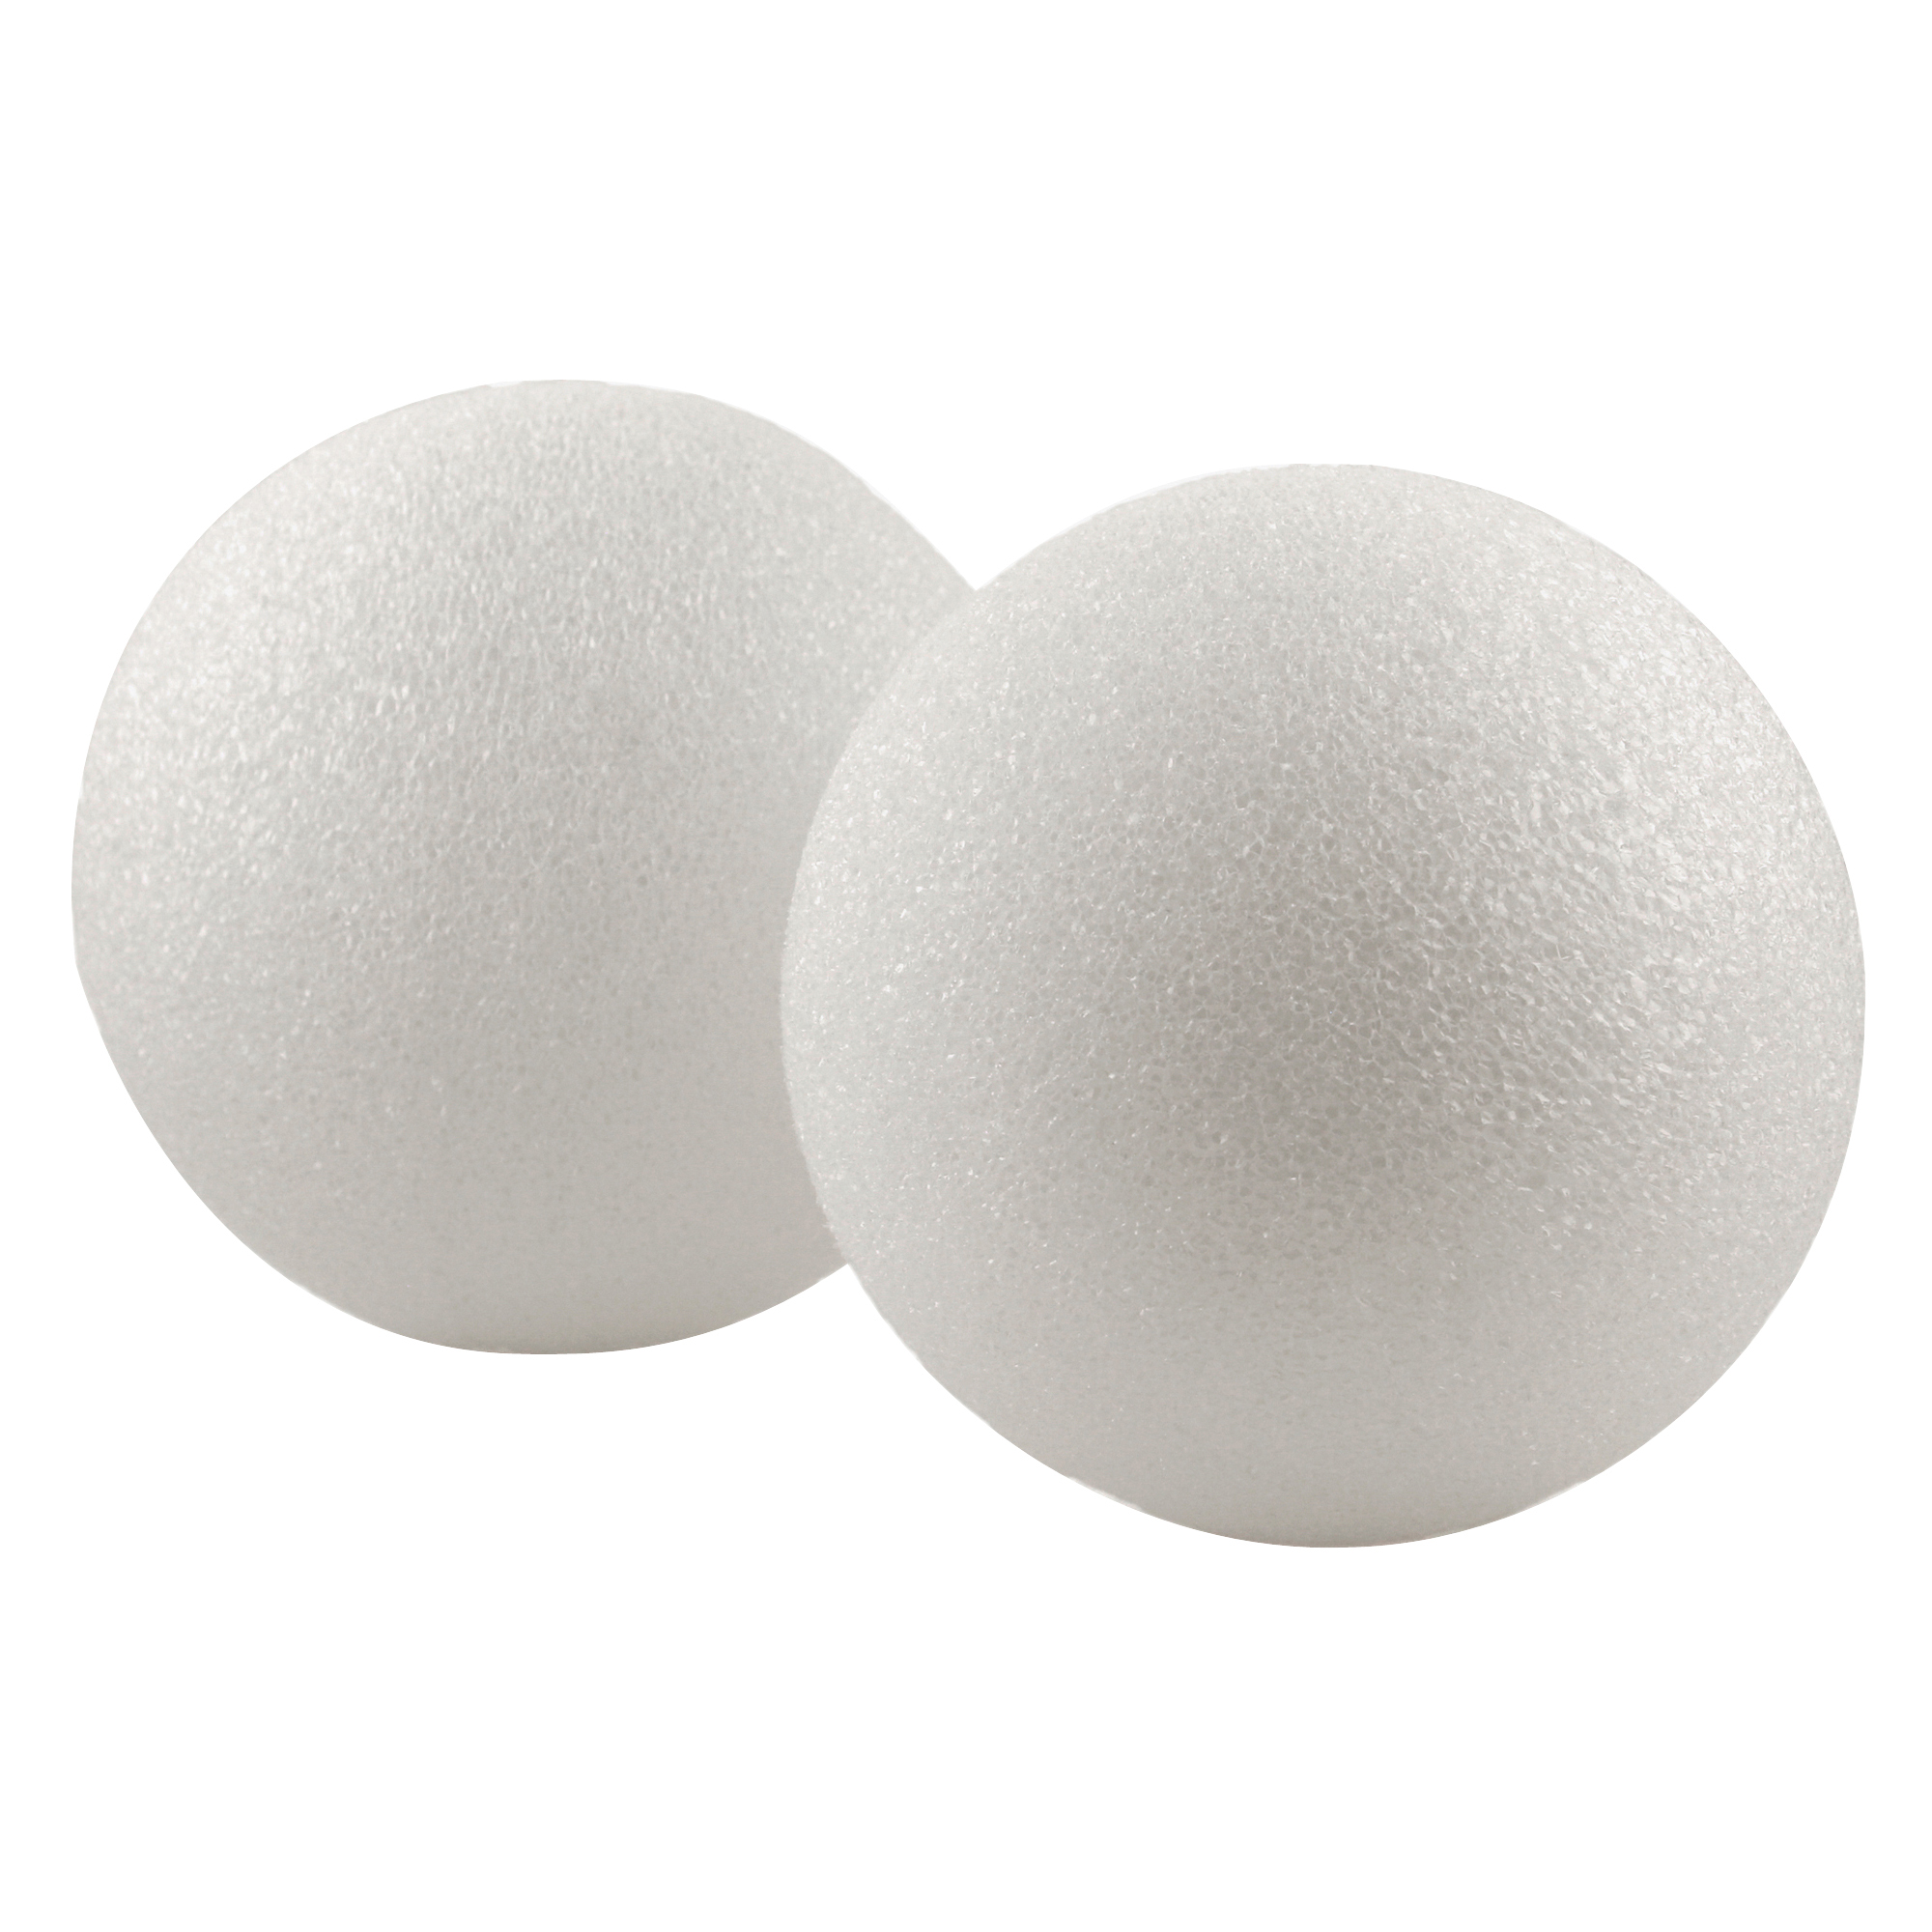 Hygloss Ed Prod Styrofoam 6in Balls Pack of 6